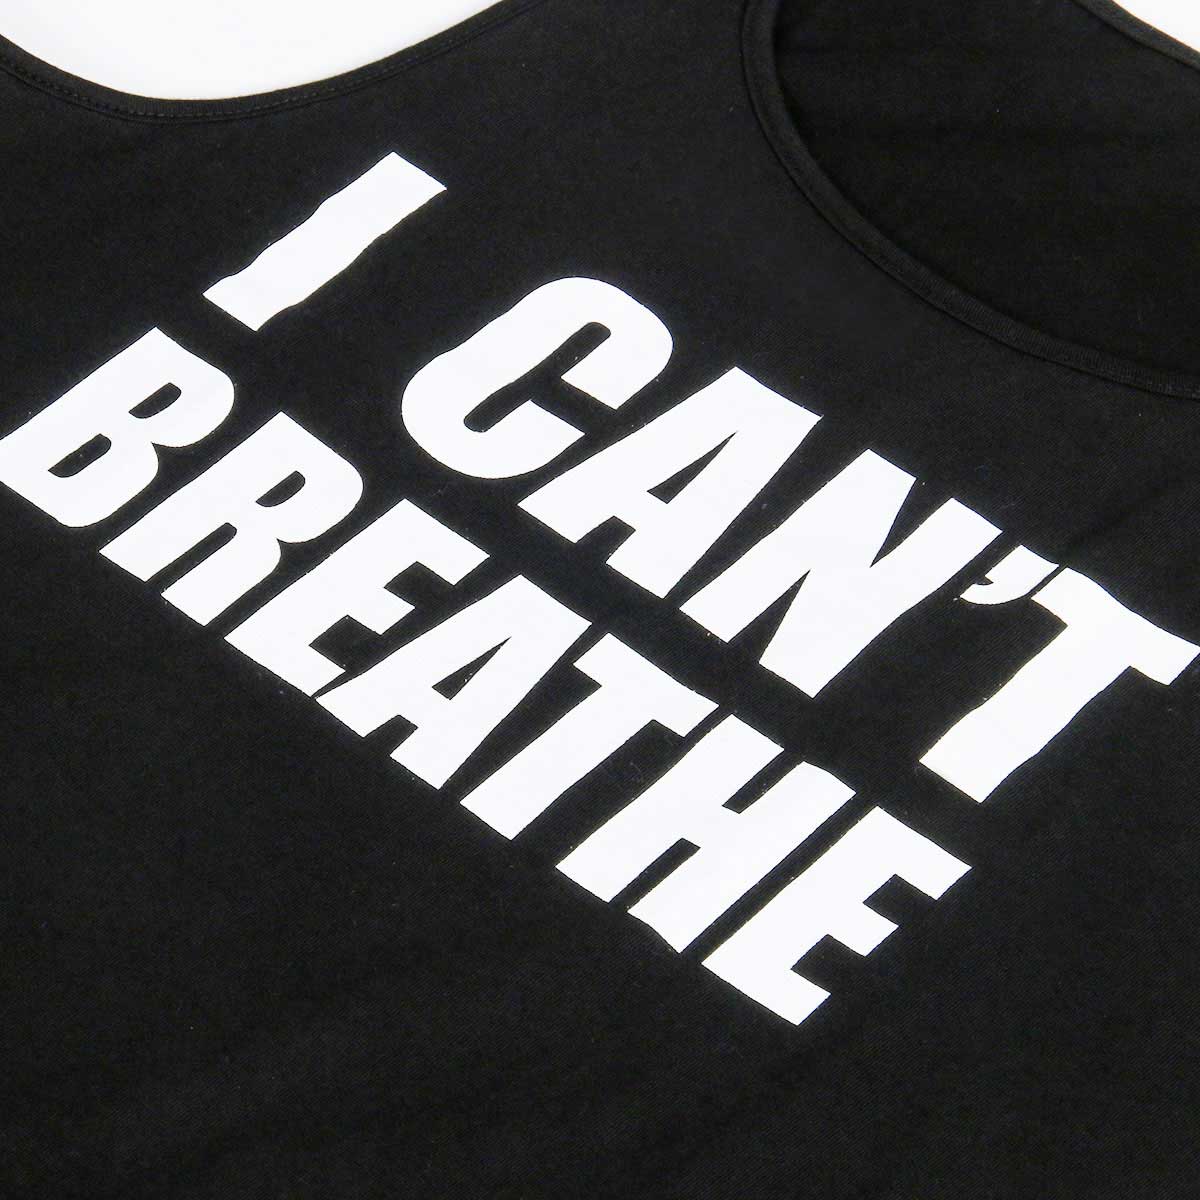 No puedo respirar por la camisa sin mangas, protesta por camiseta